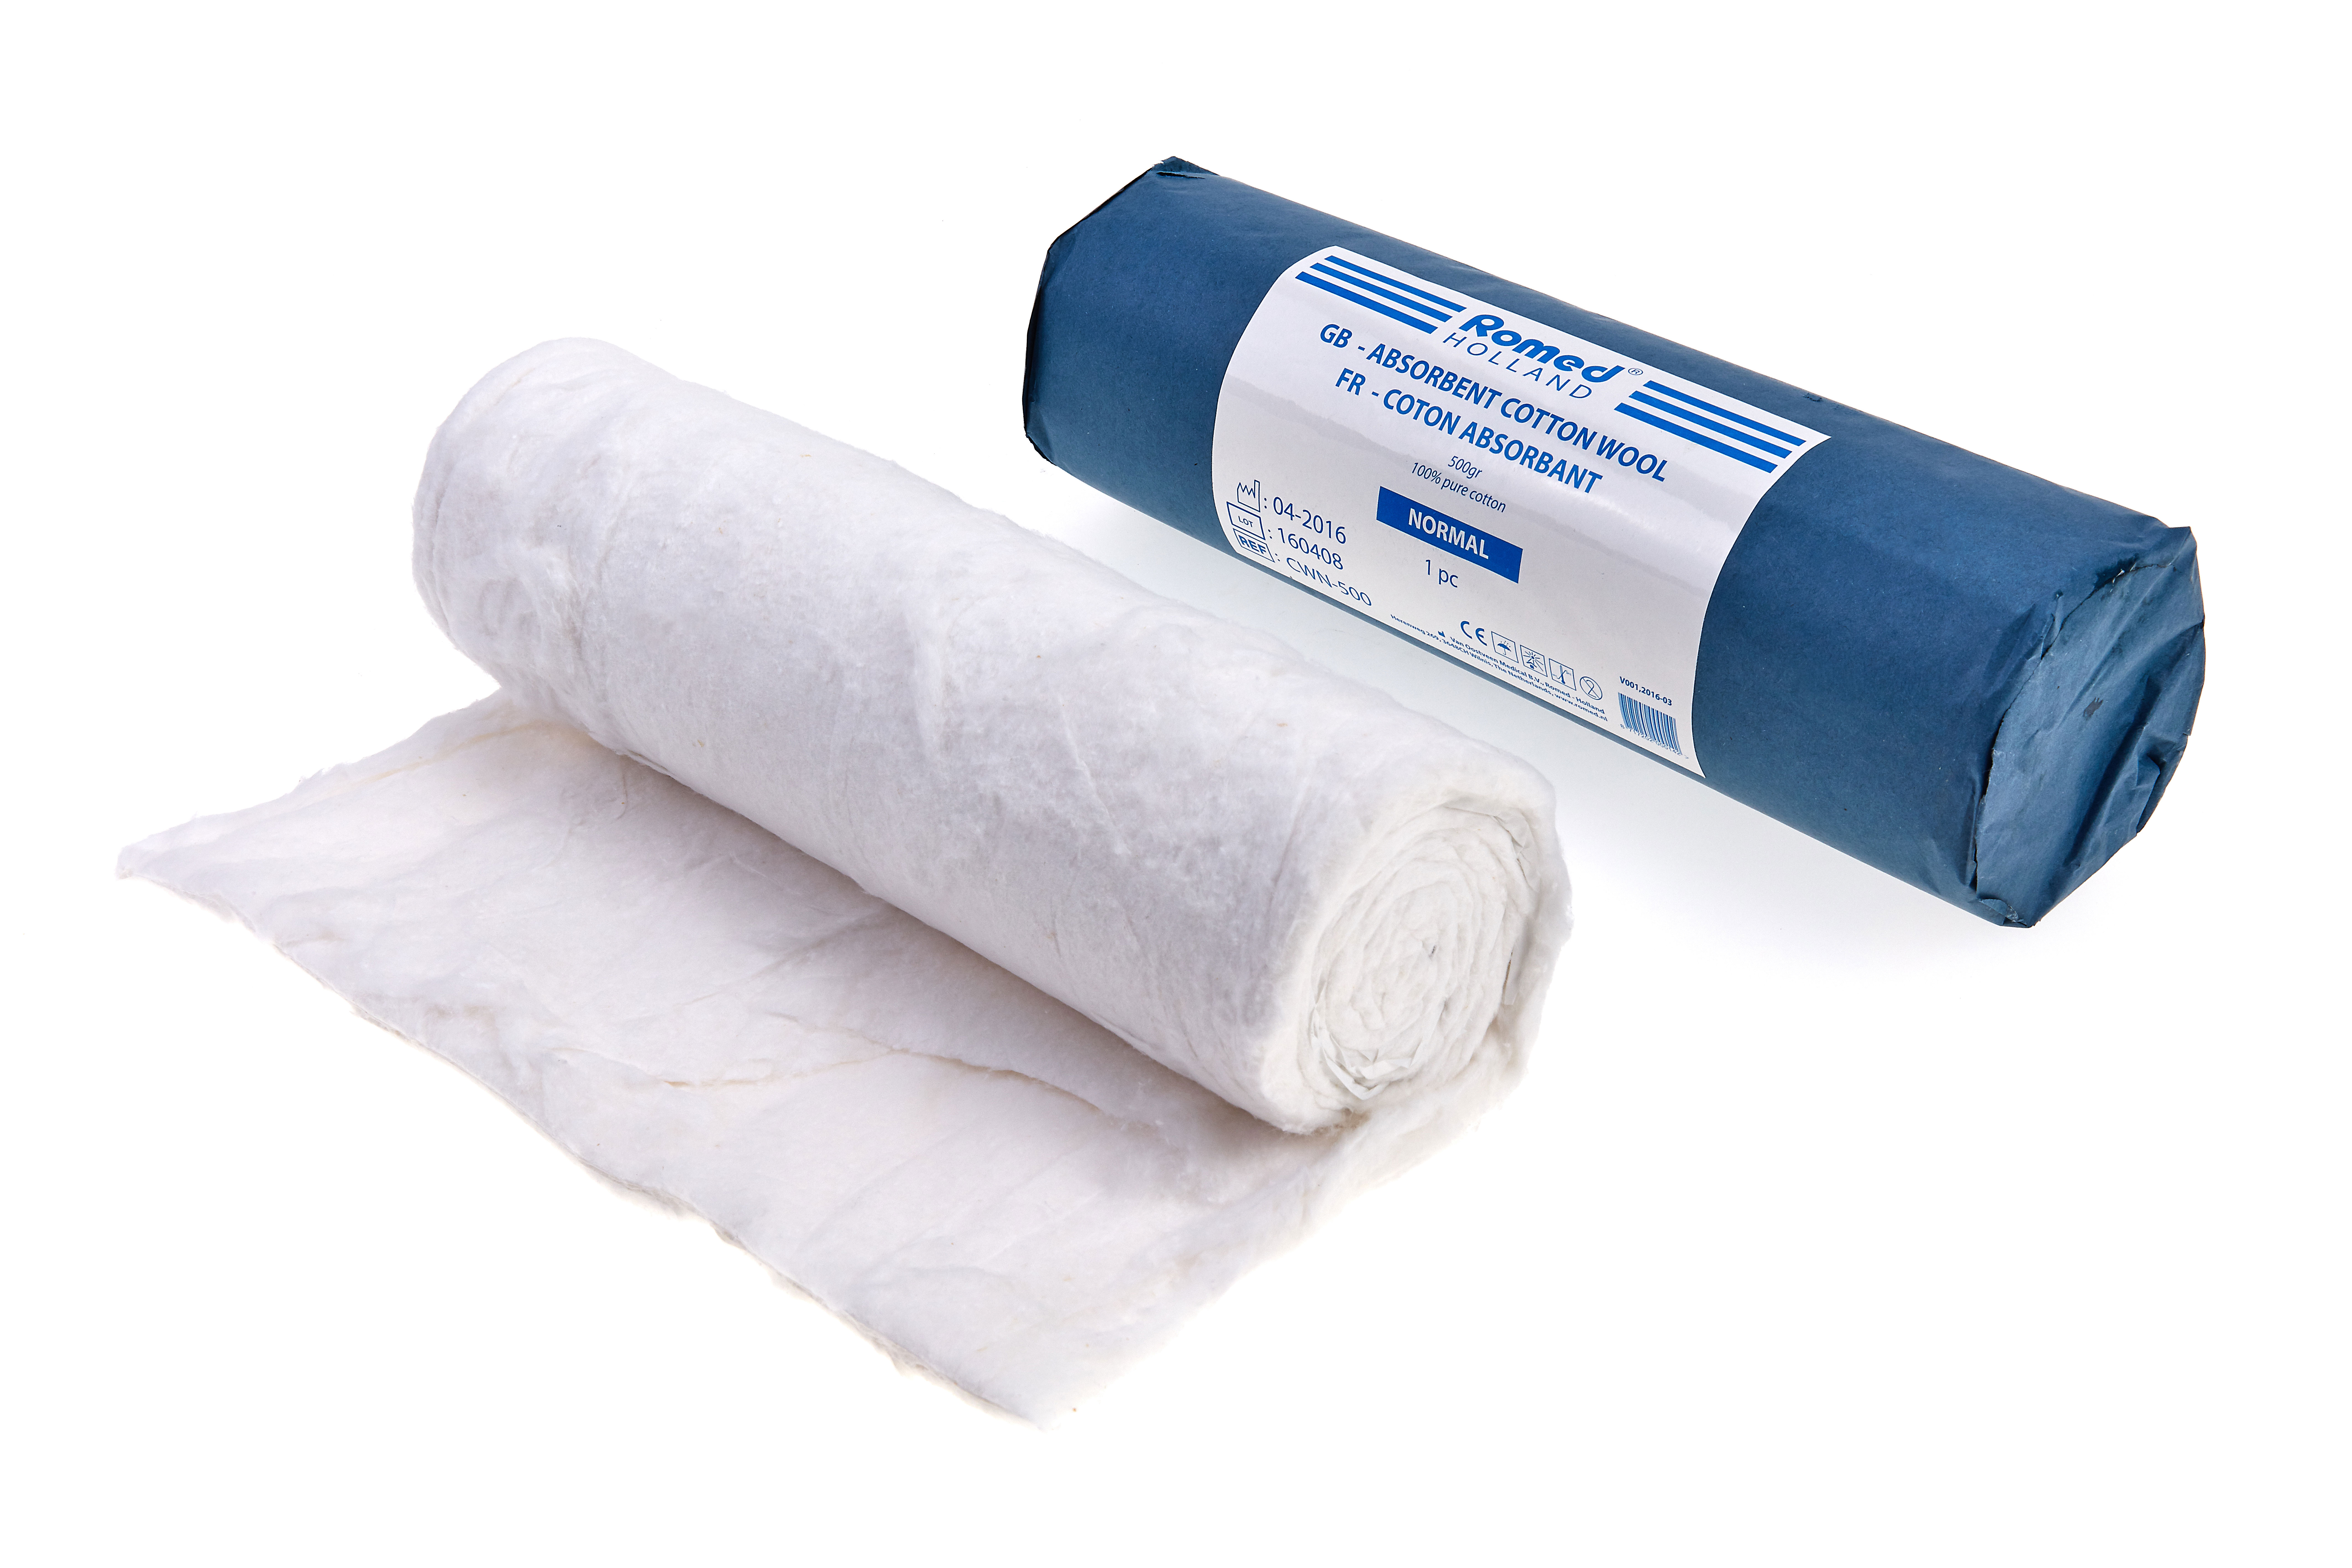 CWN-500 Ouate absorbante Romed, dégraissée et blanchie, avec papier bleu: extrémité coupée, 500gr, 100% pur coton, par pièce, 30 rouleaux dans un carton